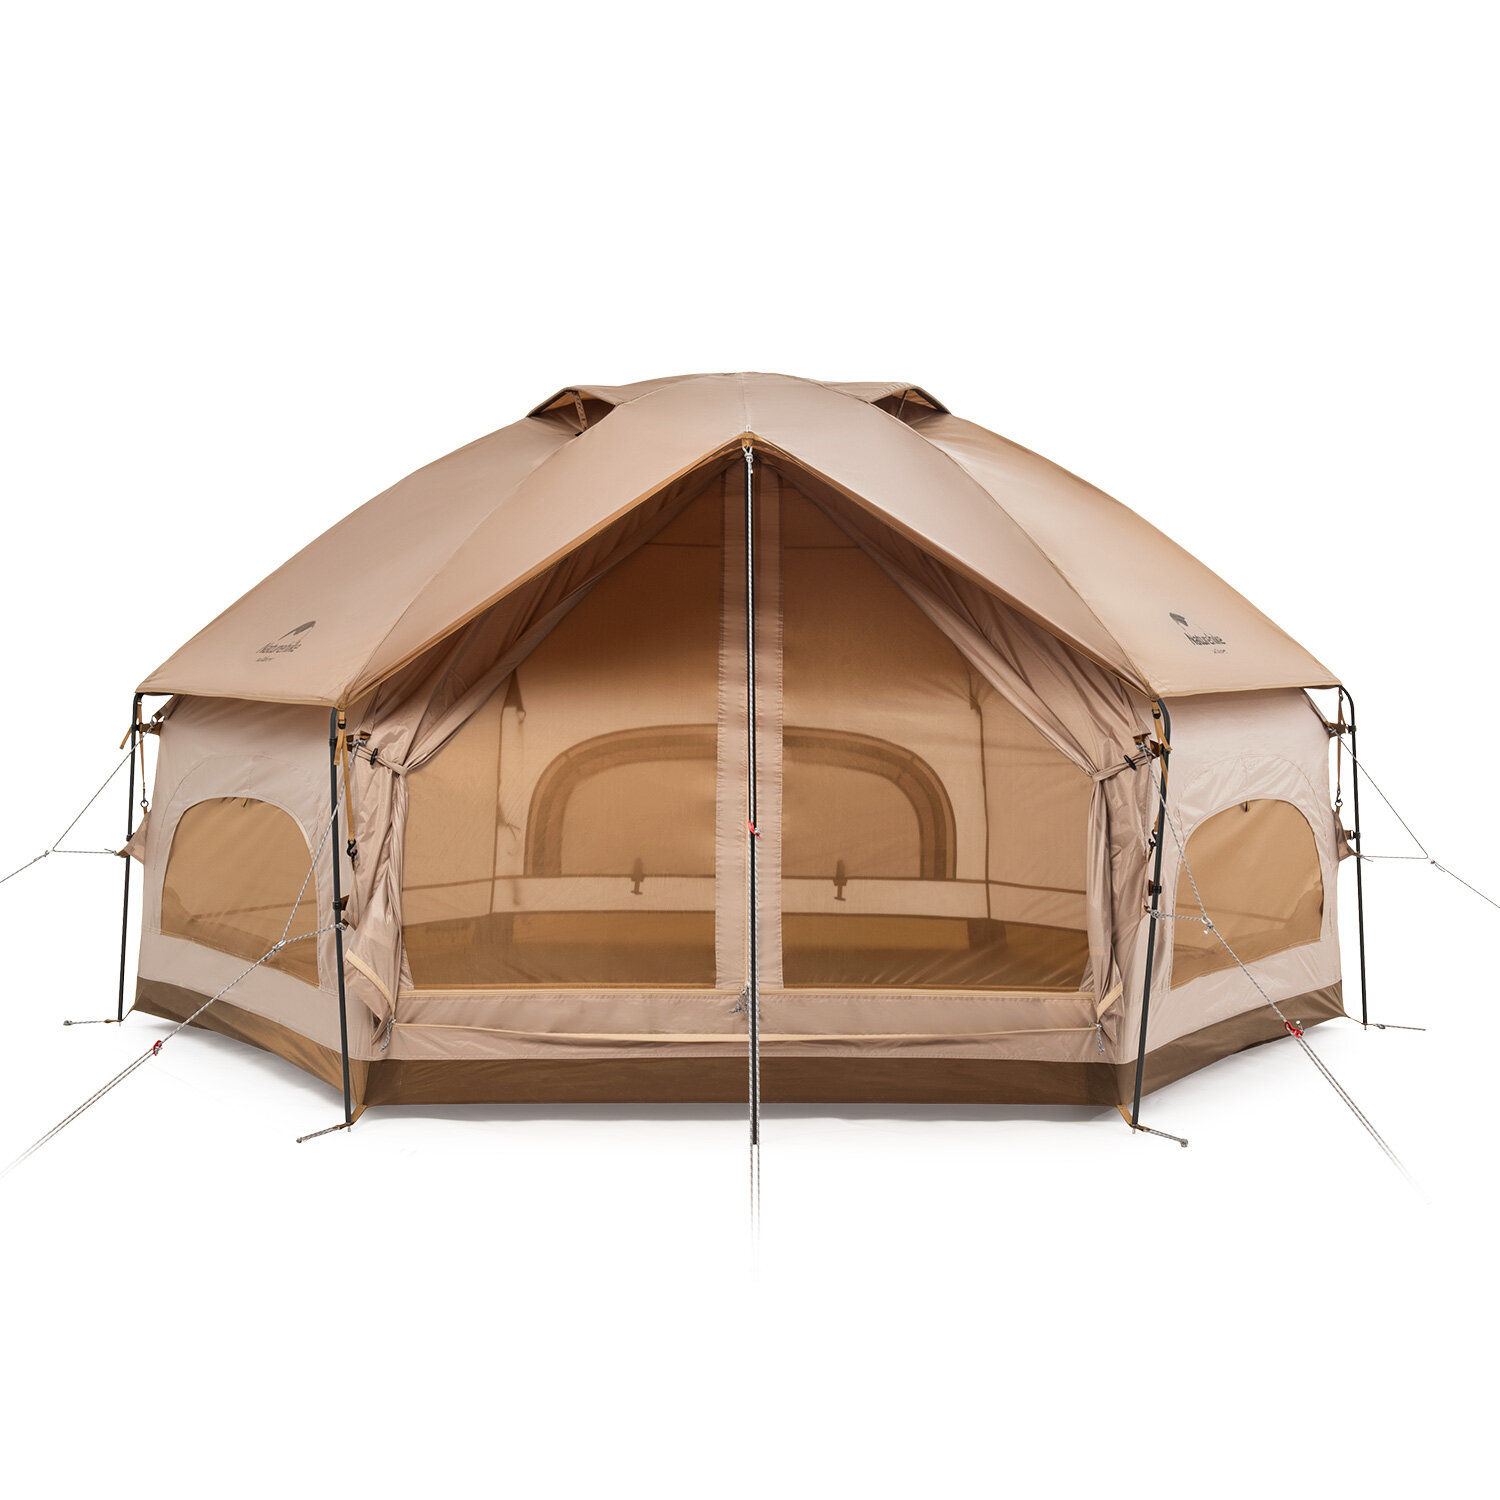 Tenda de acampamento hexagonal Naturehike em poliéster 210T com liga de alumínio à prova d'água e respirável para camping e viagens ao ar livre.